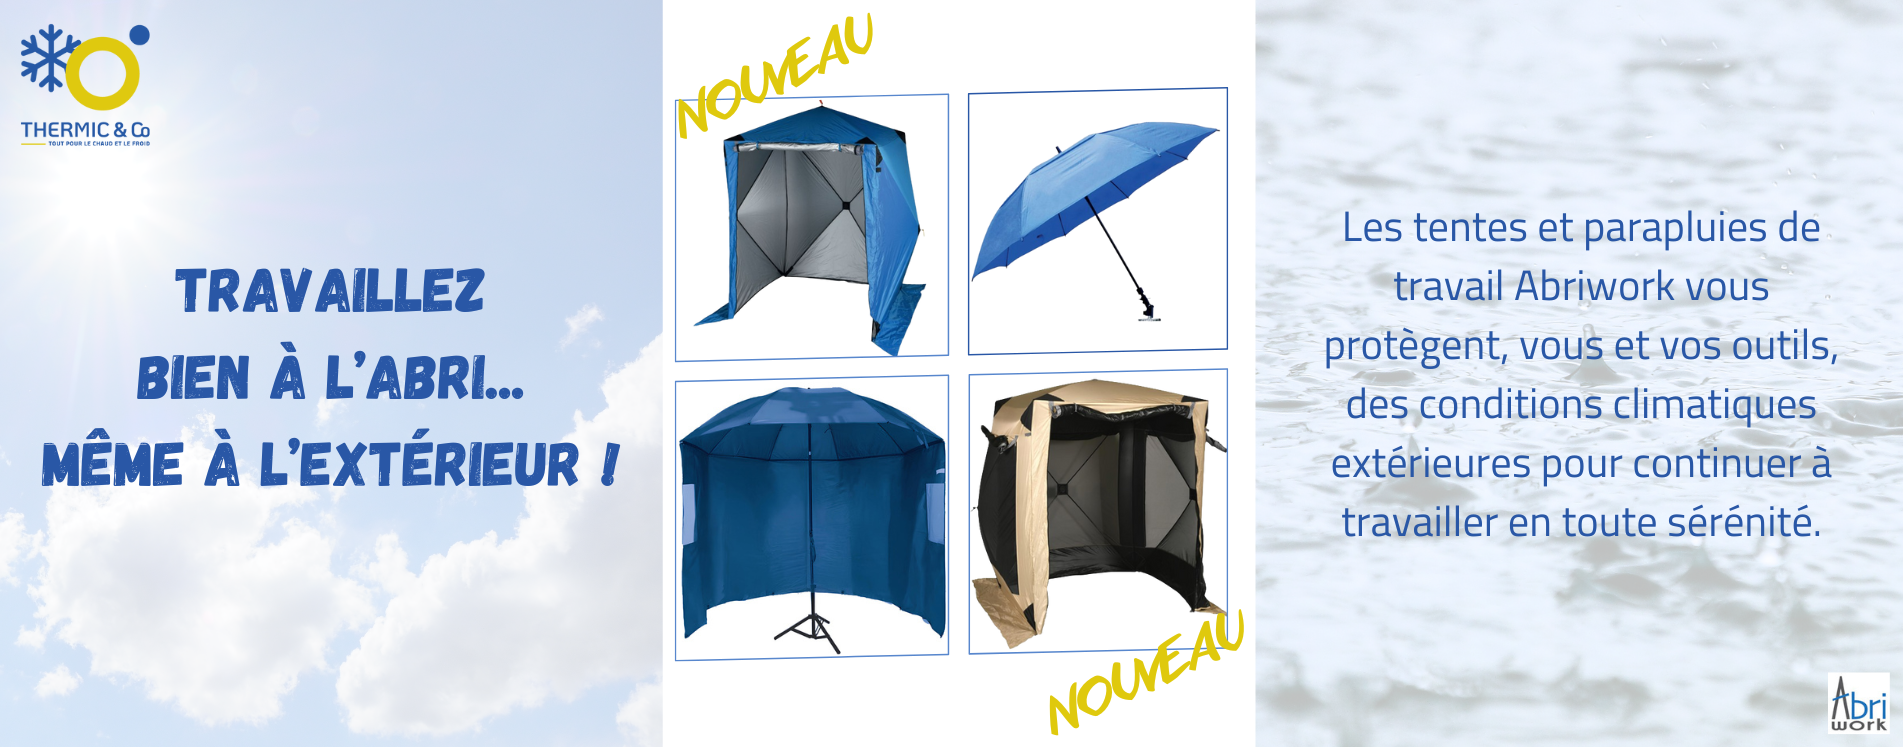 Tentes et parapluies de travail - Thermic & Co